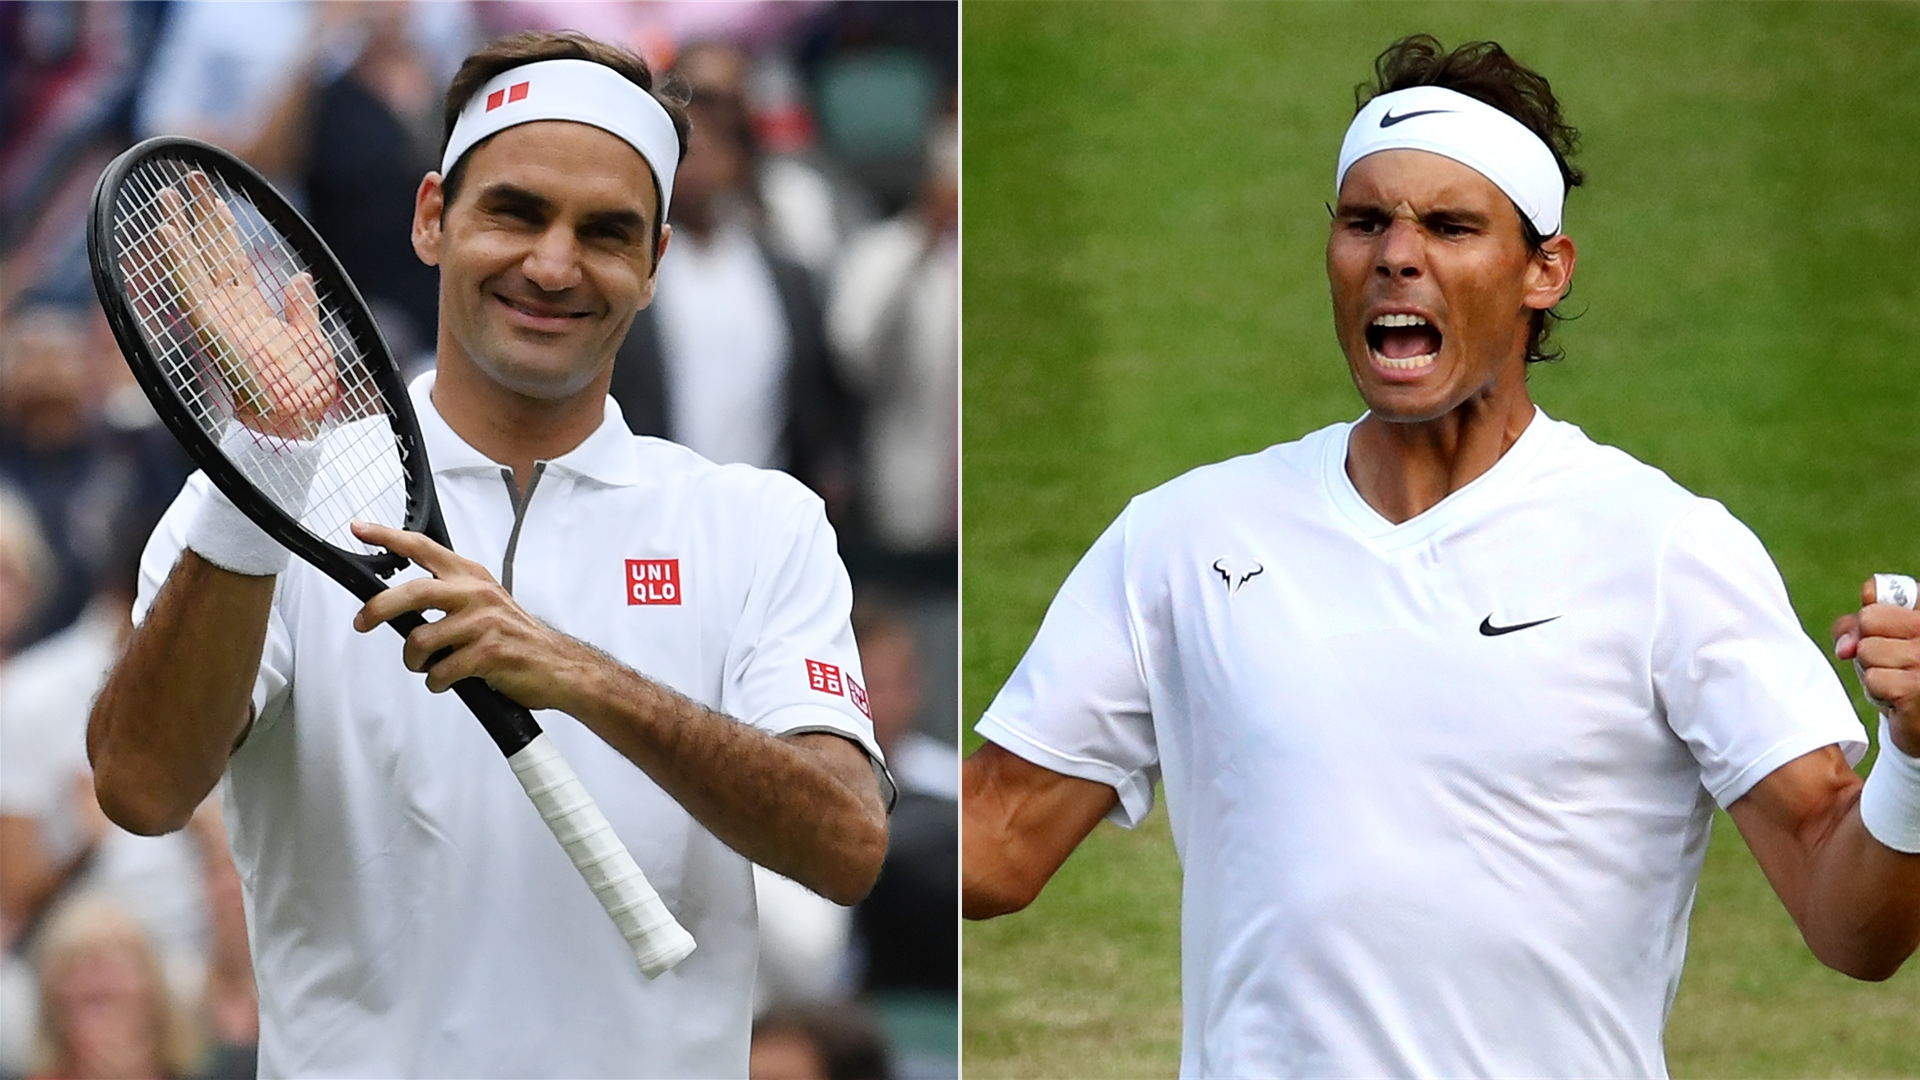 Roger Federer vs. Rafael Nadal: Time, TV channel, live stream for 2019